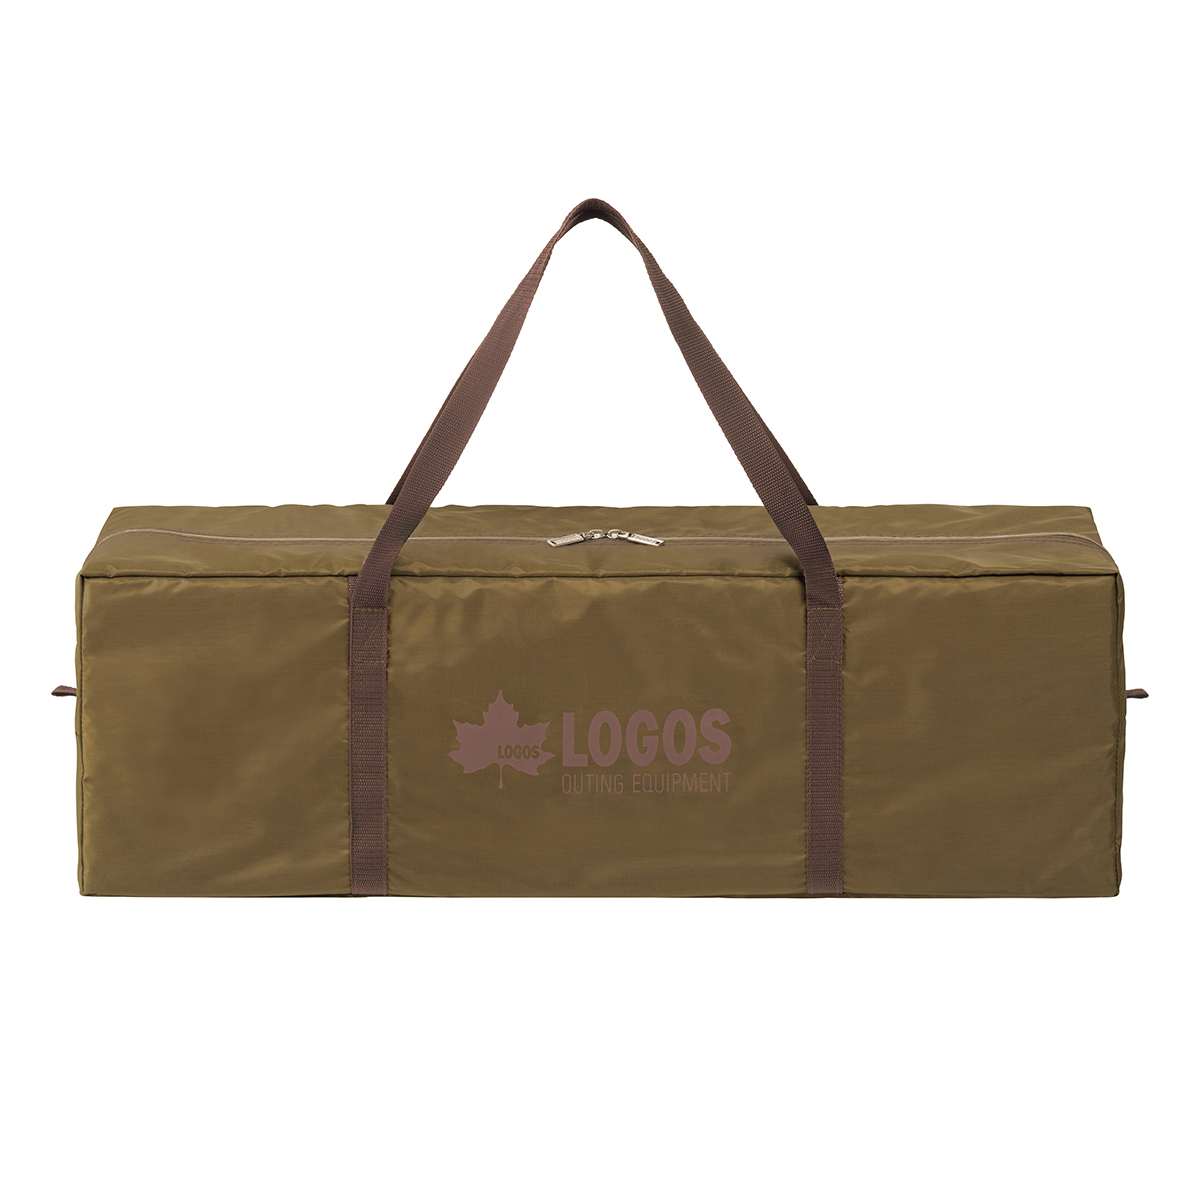 LOGOS LAND Tepee 350|ギア|テント|ワンポール|製品情報|ロゴス